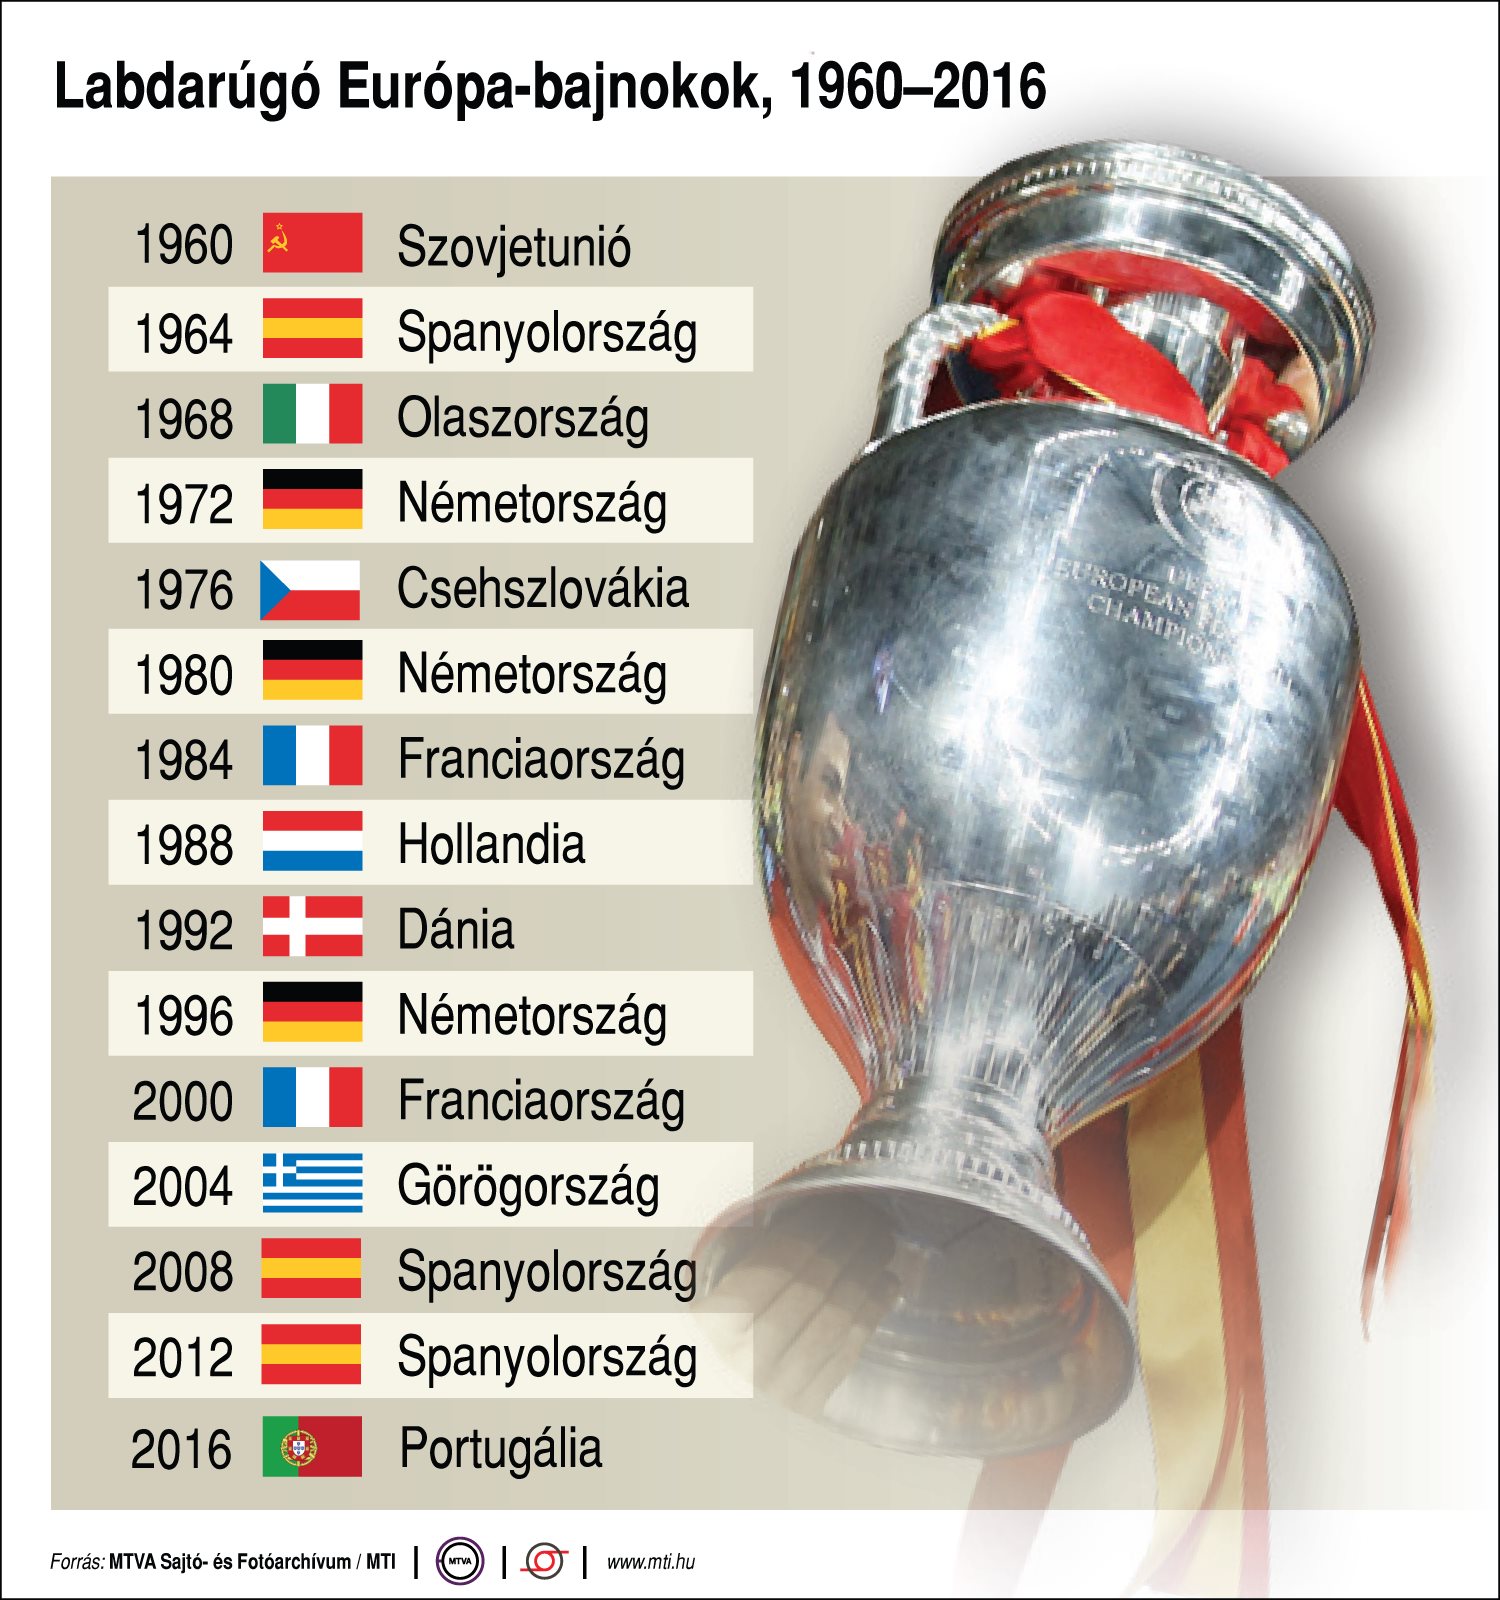 Labdarúgó Európa-bajnokok, 1960-2016